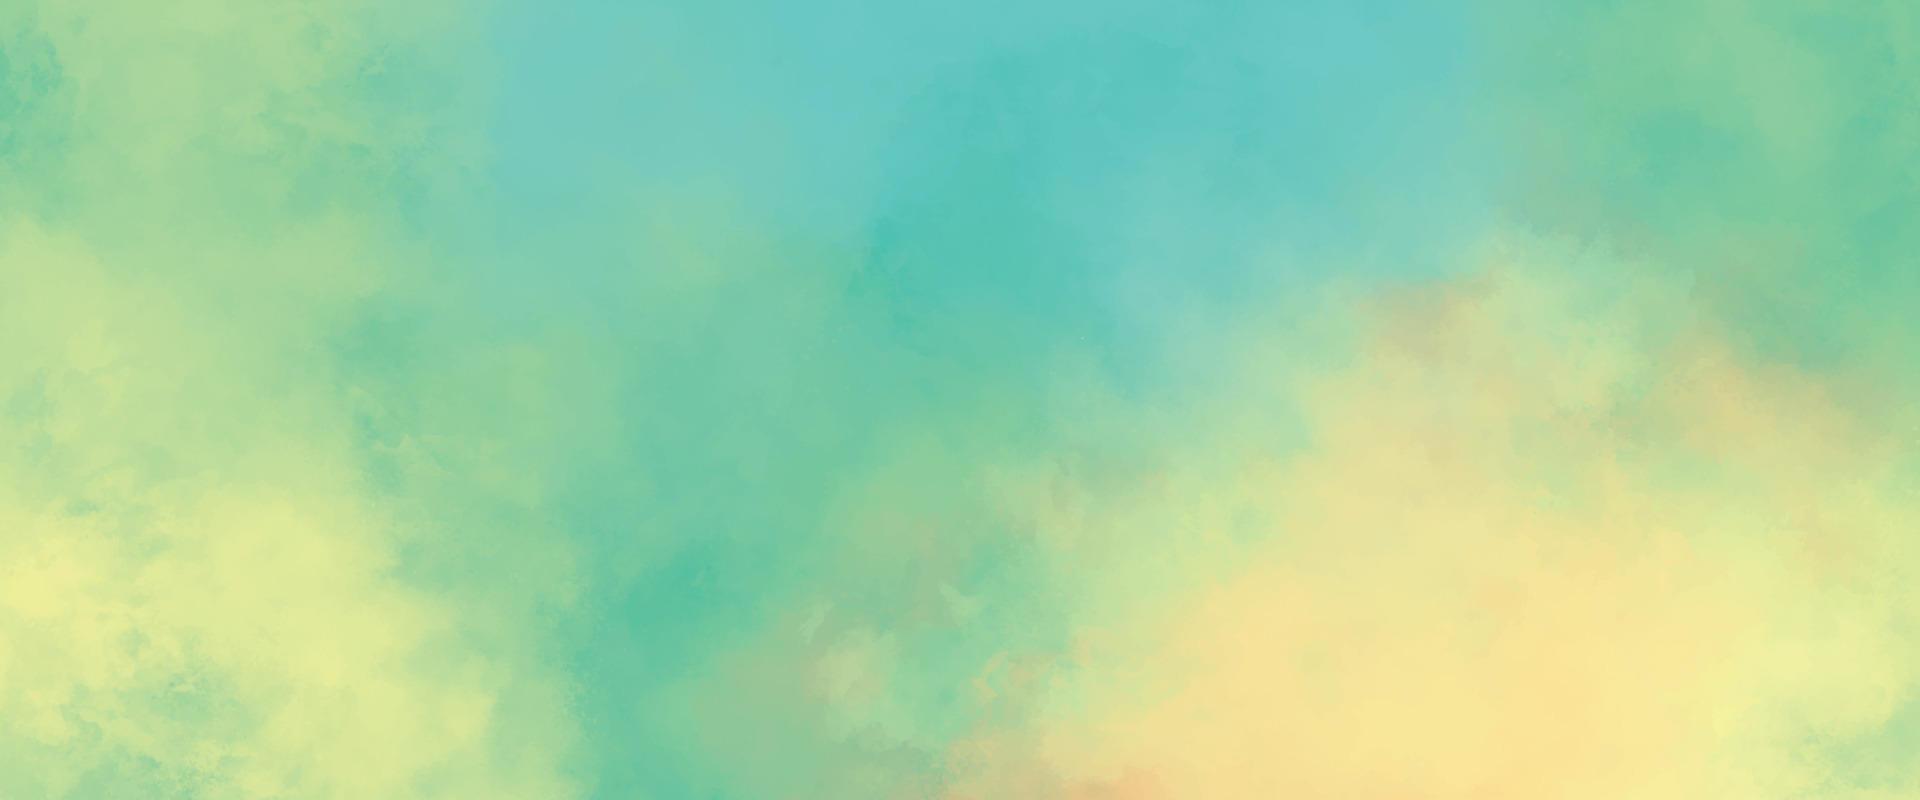 abstrakt vattenfärg måla bakgrund. skön blå grön och gul vattenfärg stänk design.färgglad enkel grön toner vattenfärg texturer.papper texturerad akvarell duk för modern kreativ design vektor